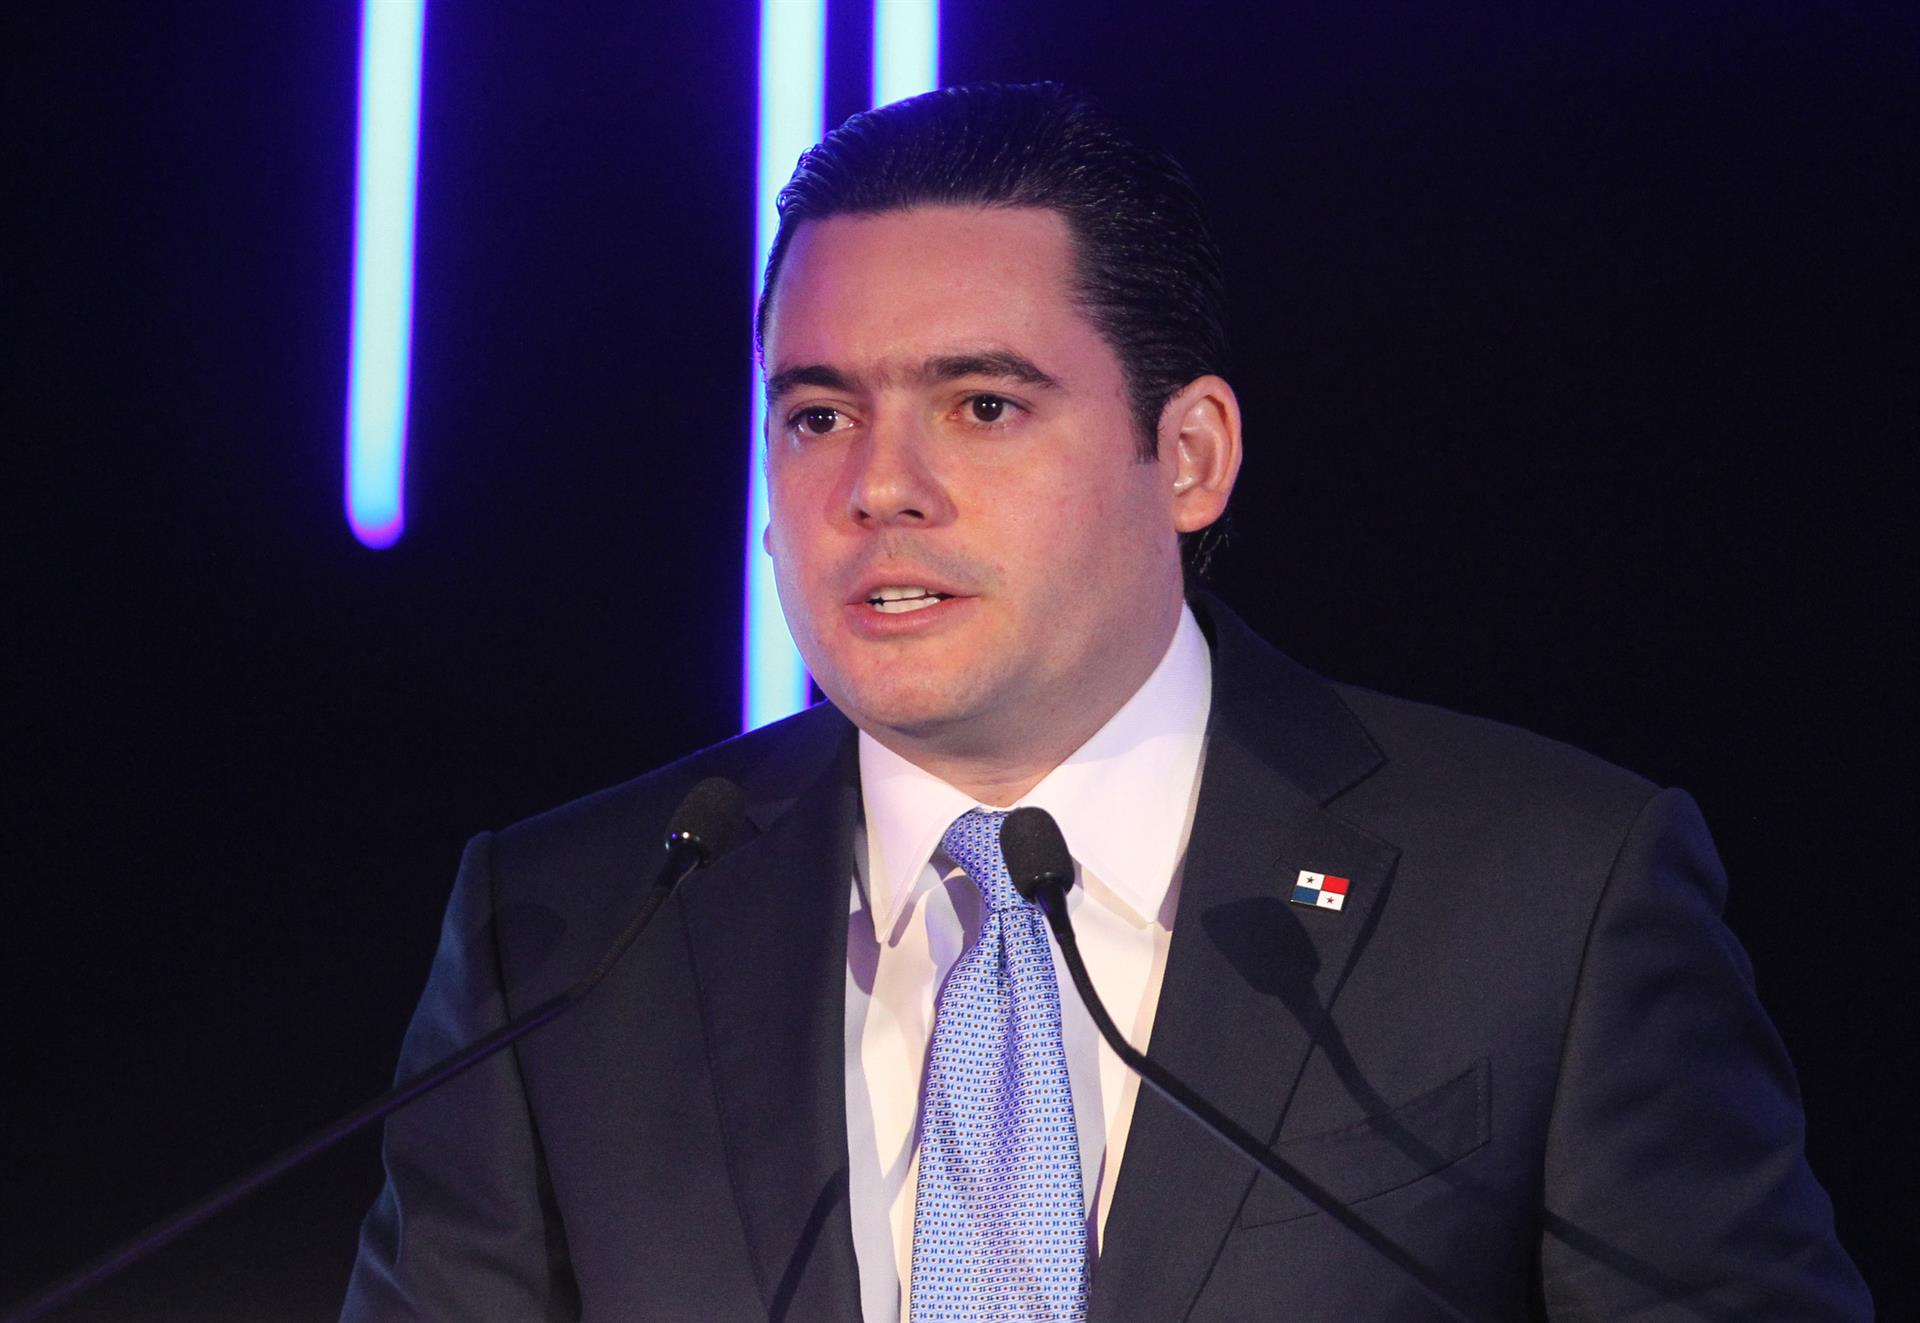 El vicepresidente de Panamá asistirá a la toma de posesión de Gustavo Petro